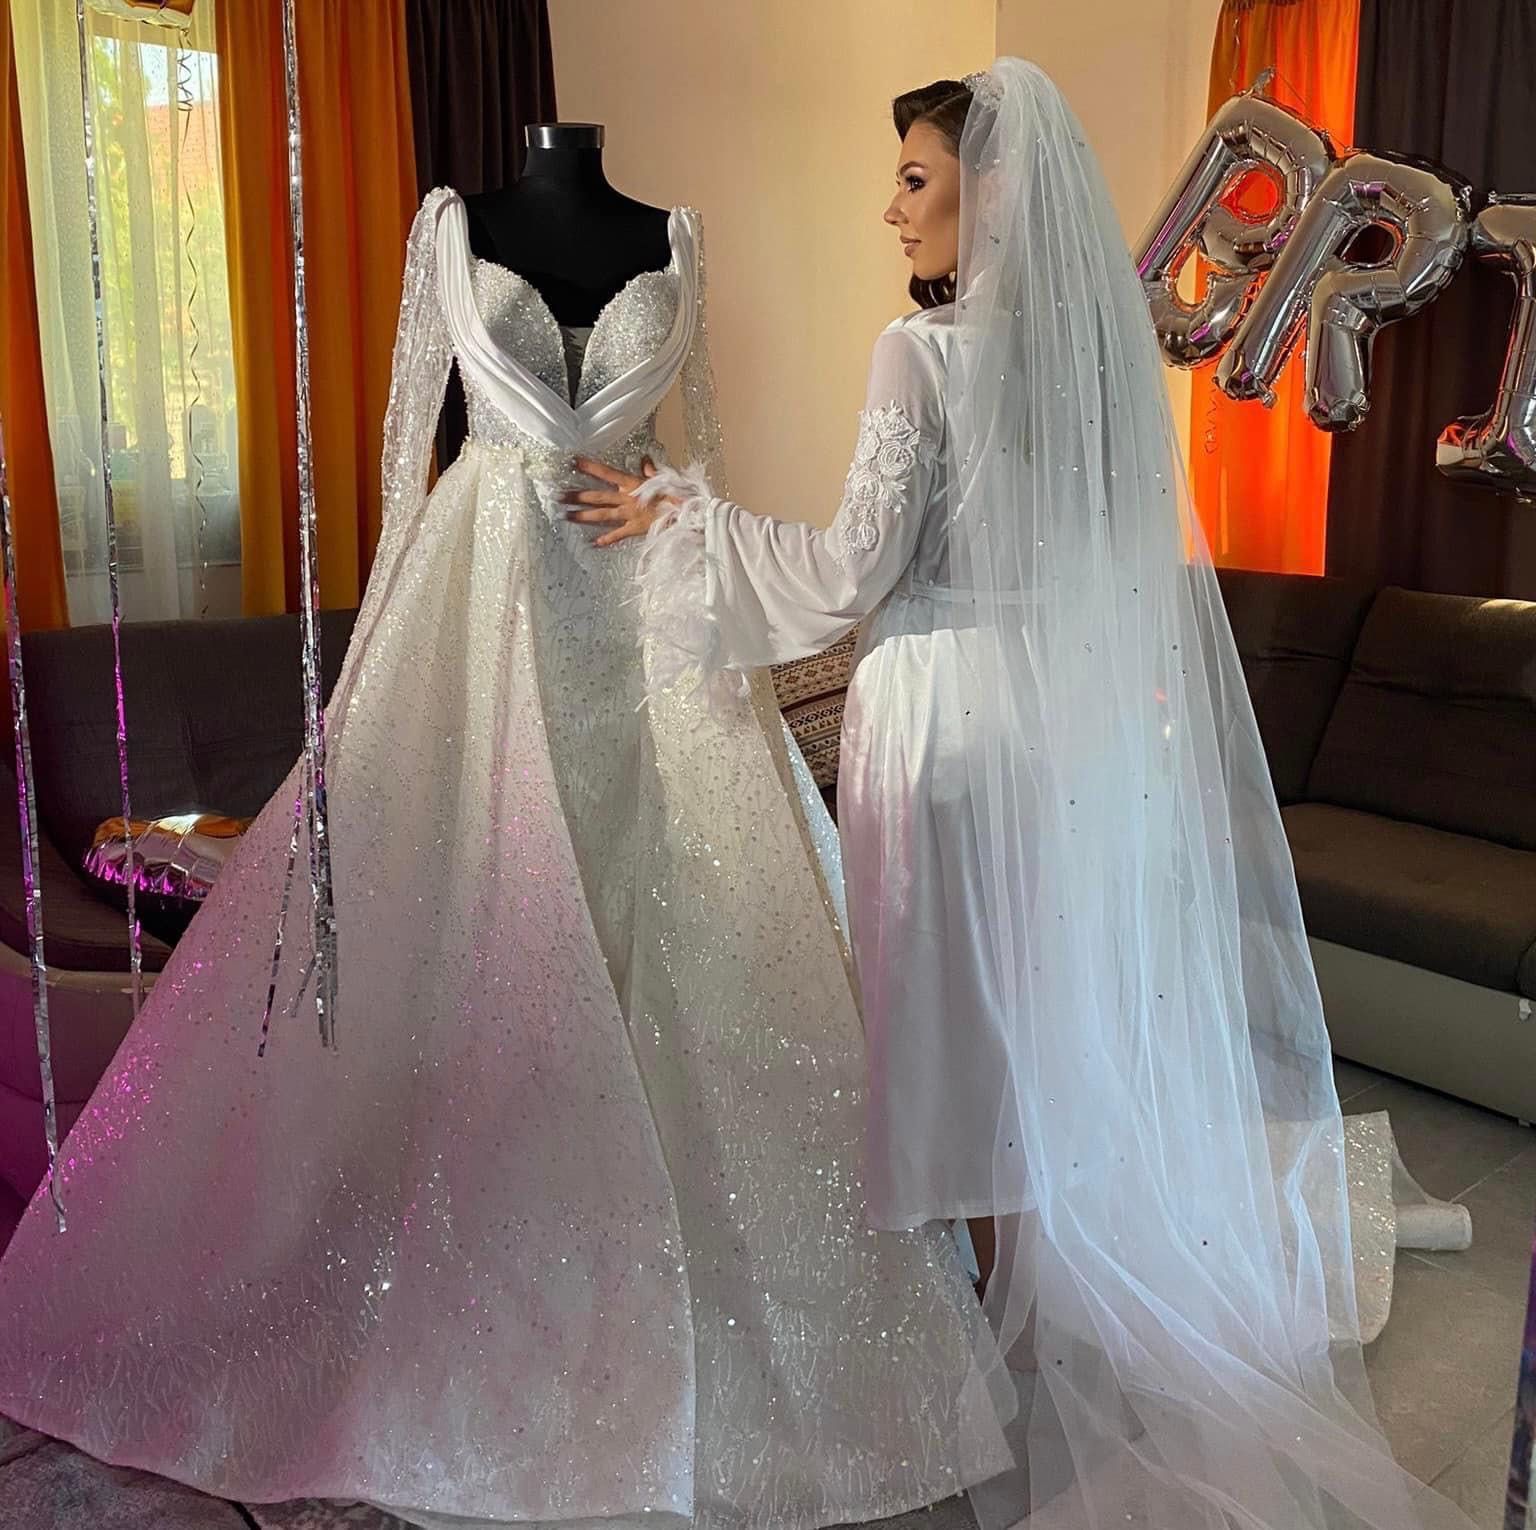 Vând rochie de mireasă făcută pe comandă în Turcia